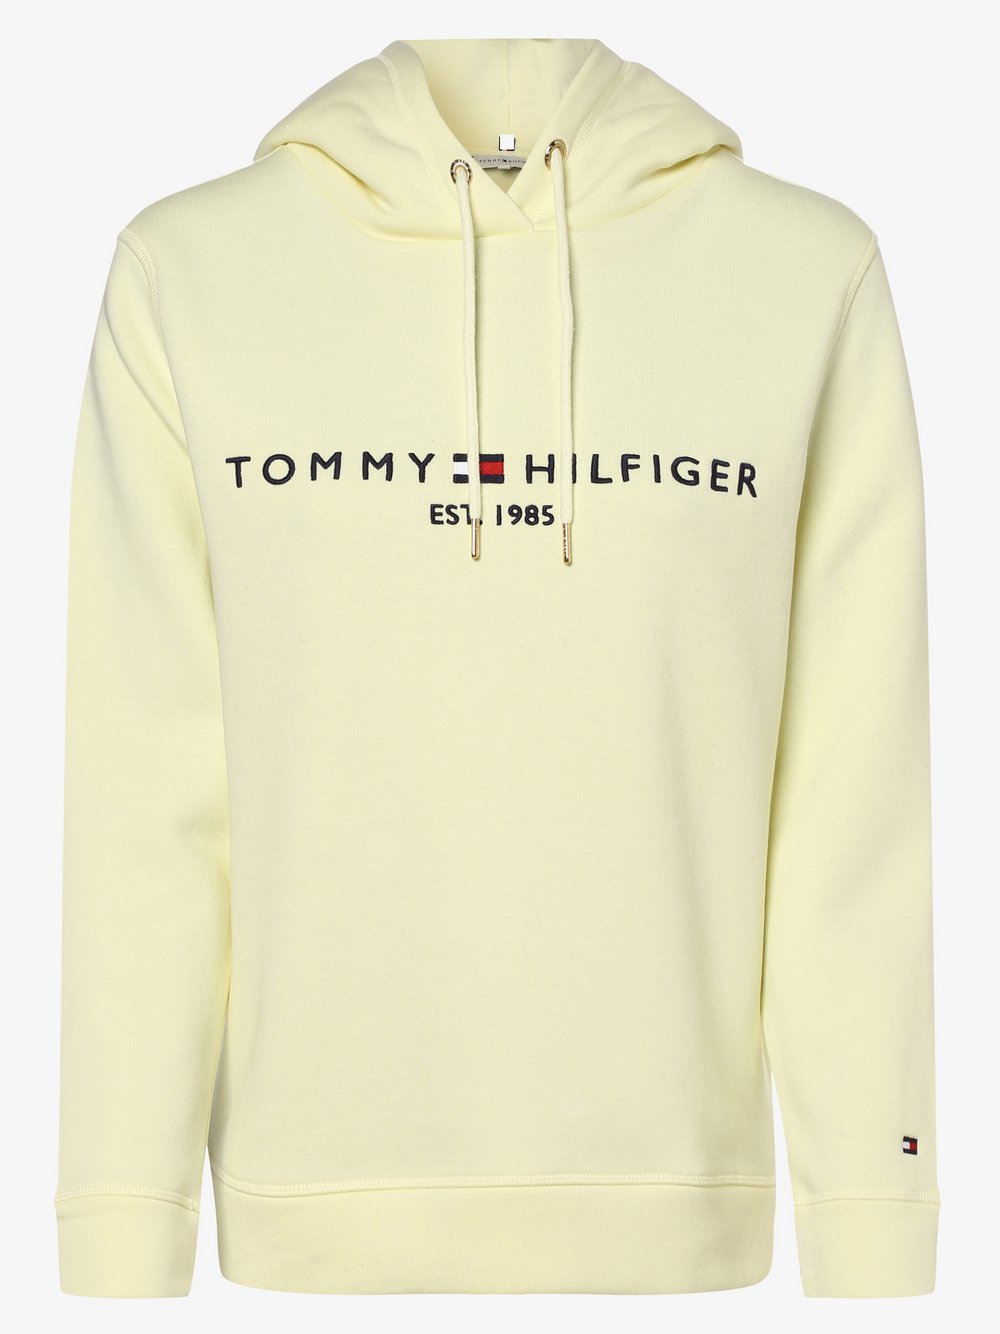 Tommy Hilfiger - Damska bluza nierozpinana, żółty